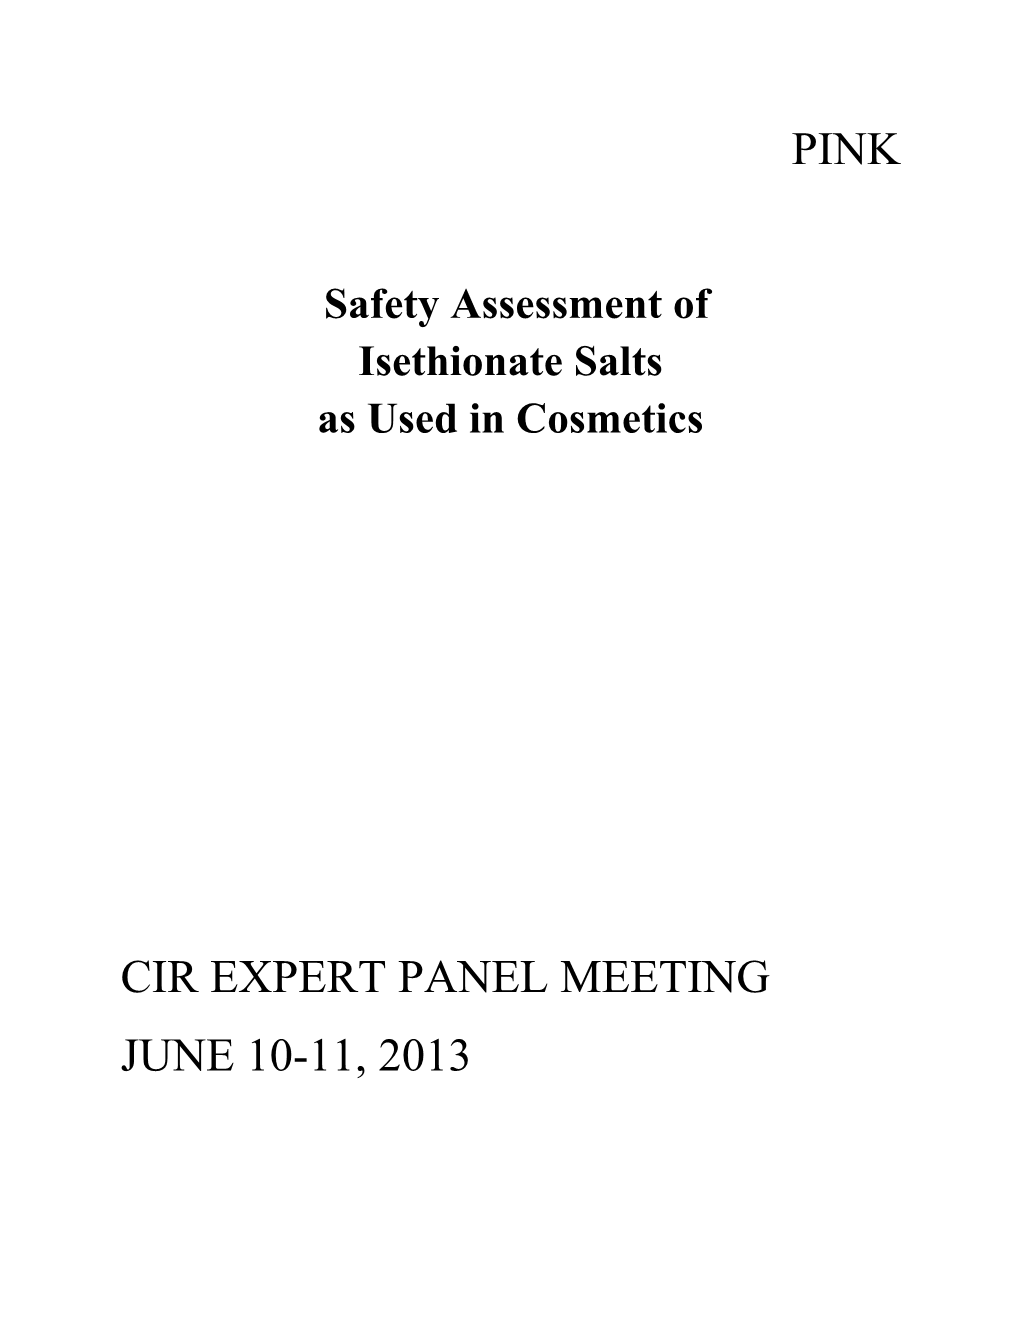 Cir Expert Panel Meeting June 10-11, 2013